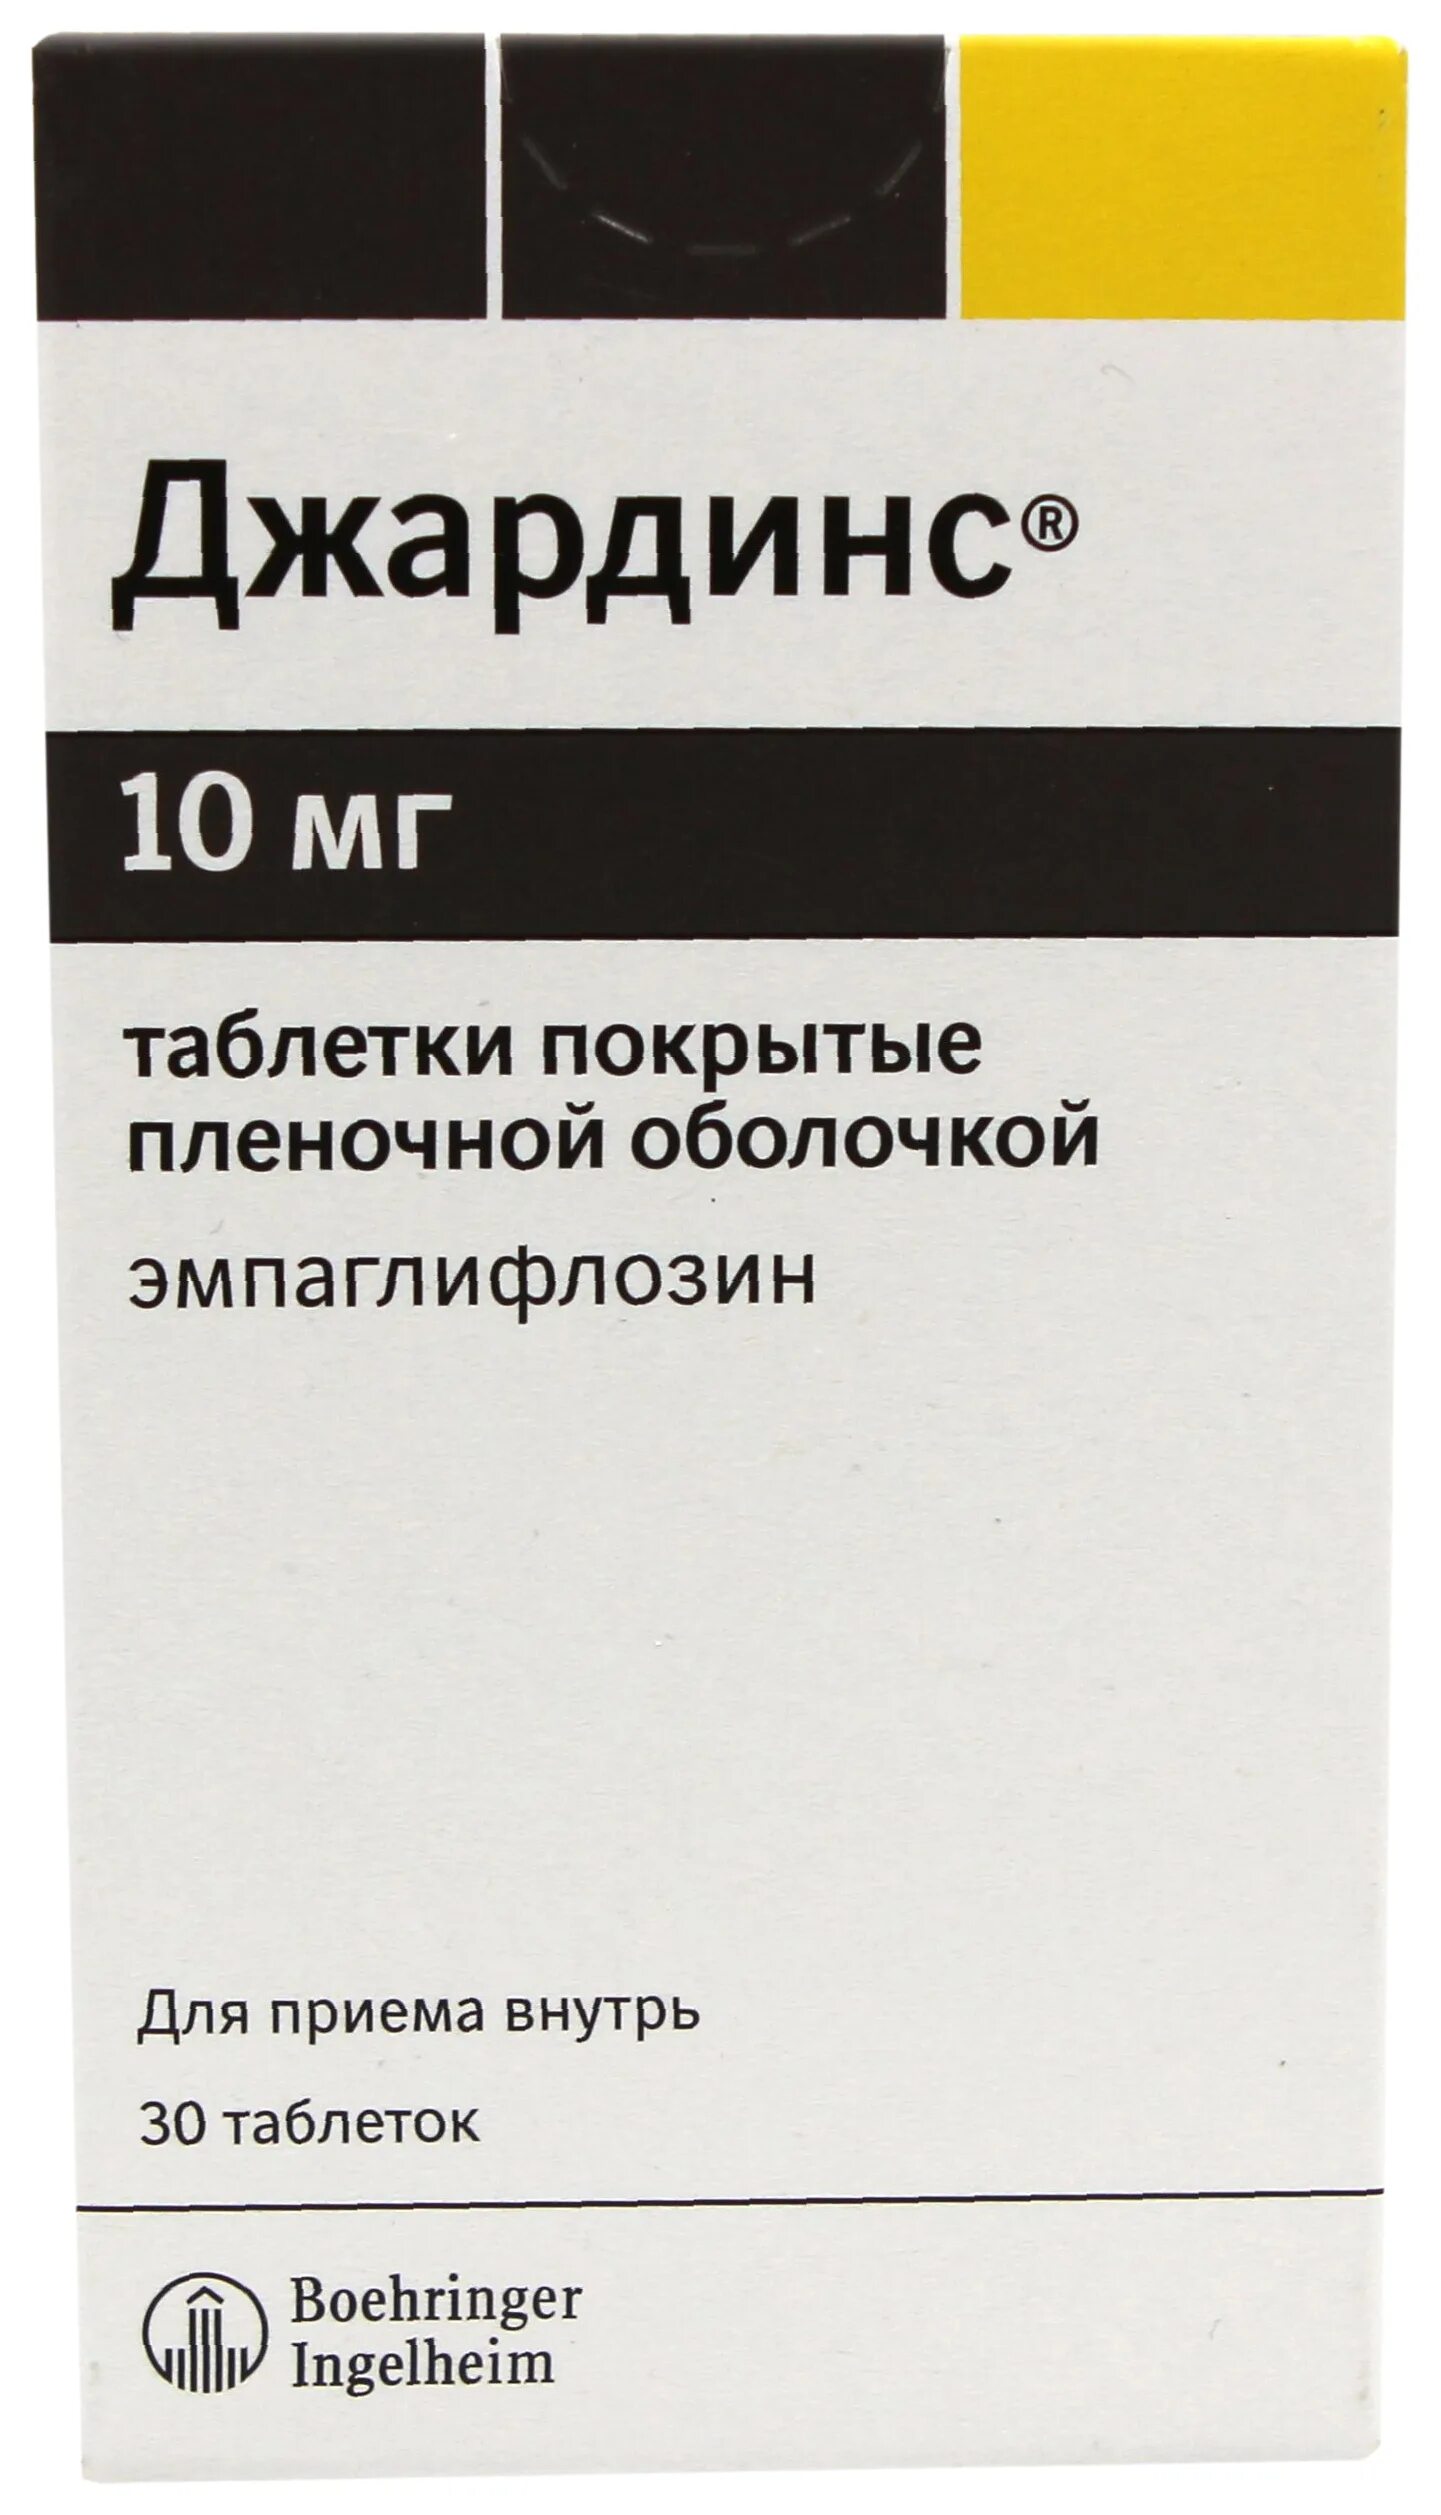 Джардинс 10. Эмпаглифлозин Джардинс 25 мг. Таблетки Джардинс 25 мг. Джардинс таблетки, покрытые пленочной оболочкой.